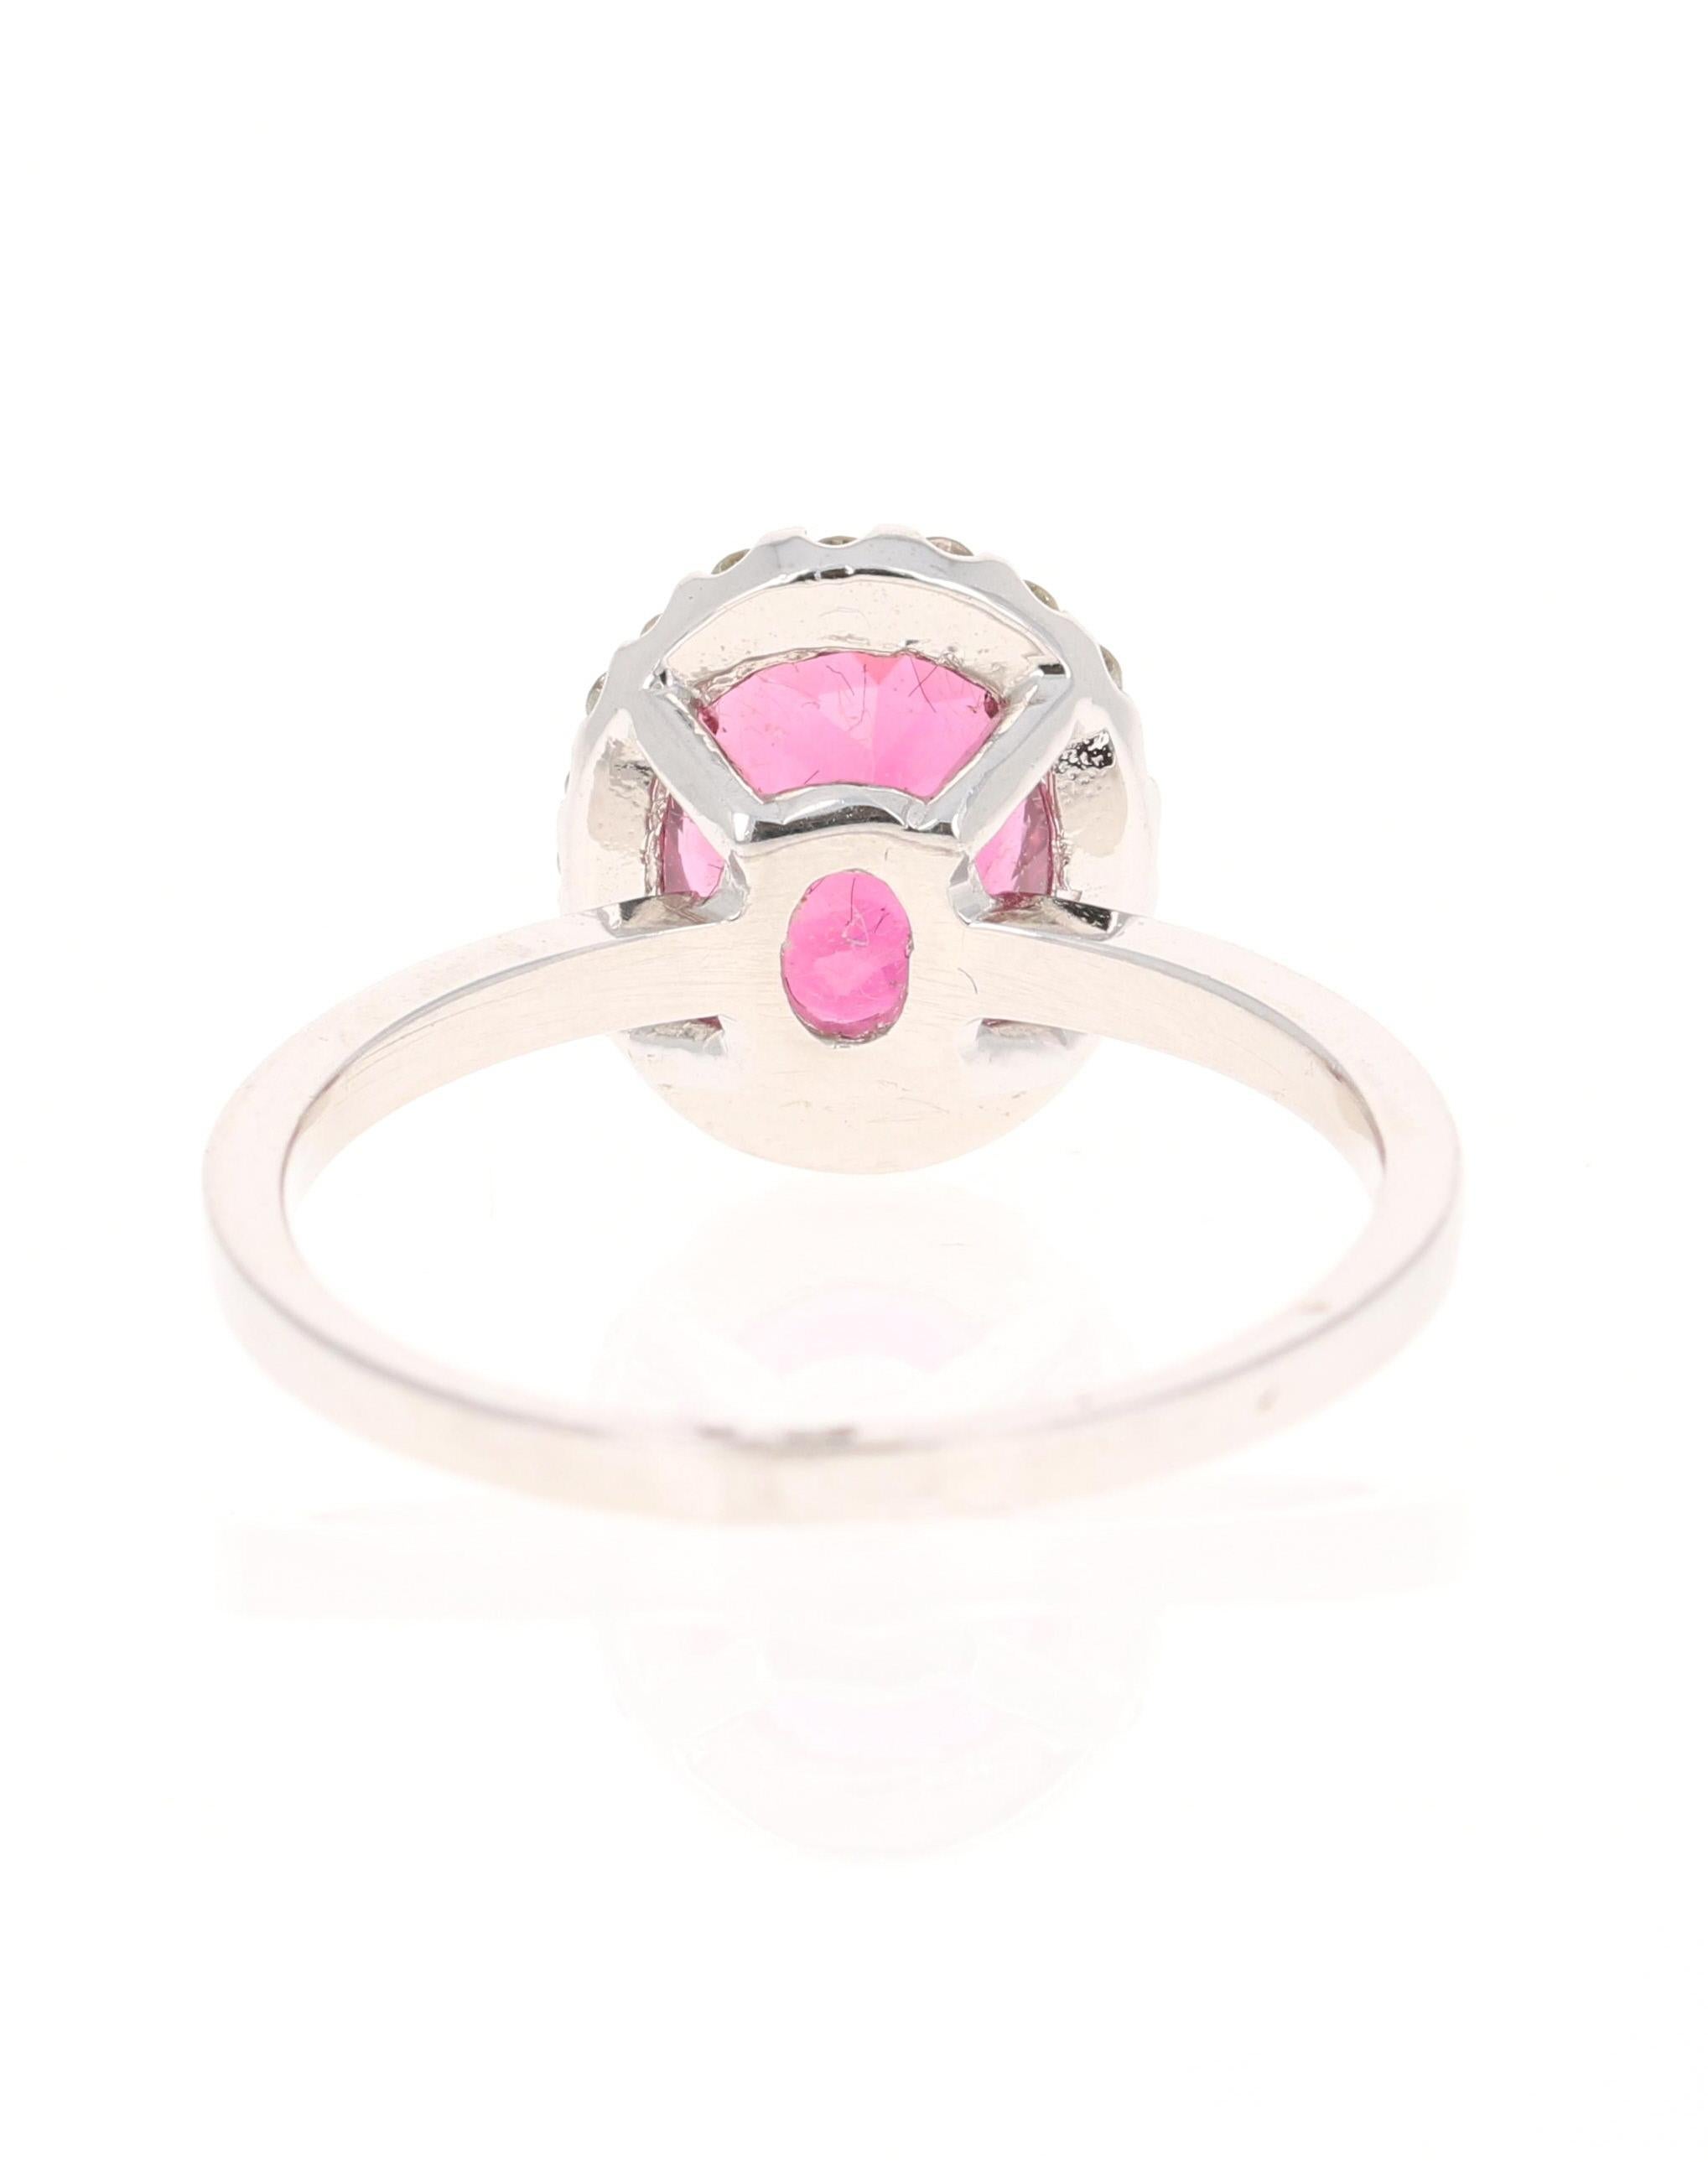 Contemporary 2.01 Carat Pink Tourmaline Diamond 14 Karat White Gold Ring